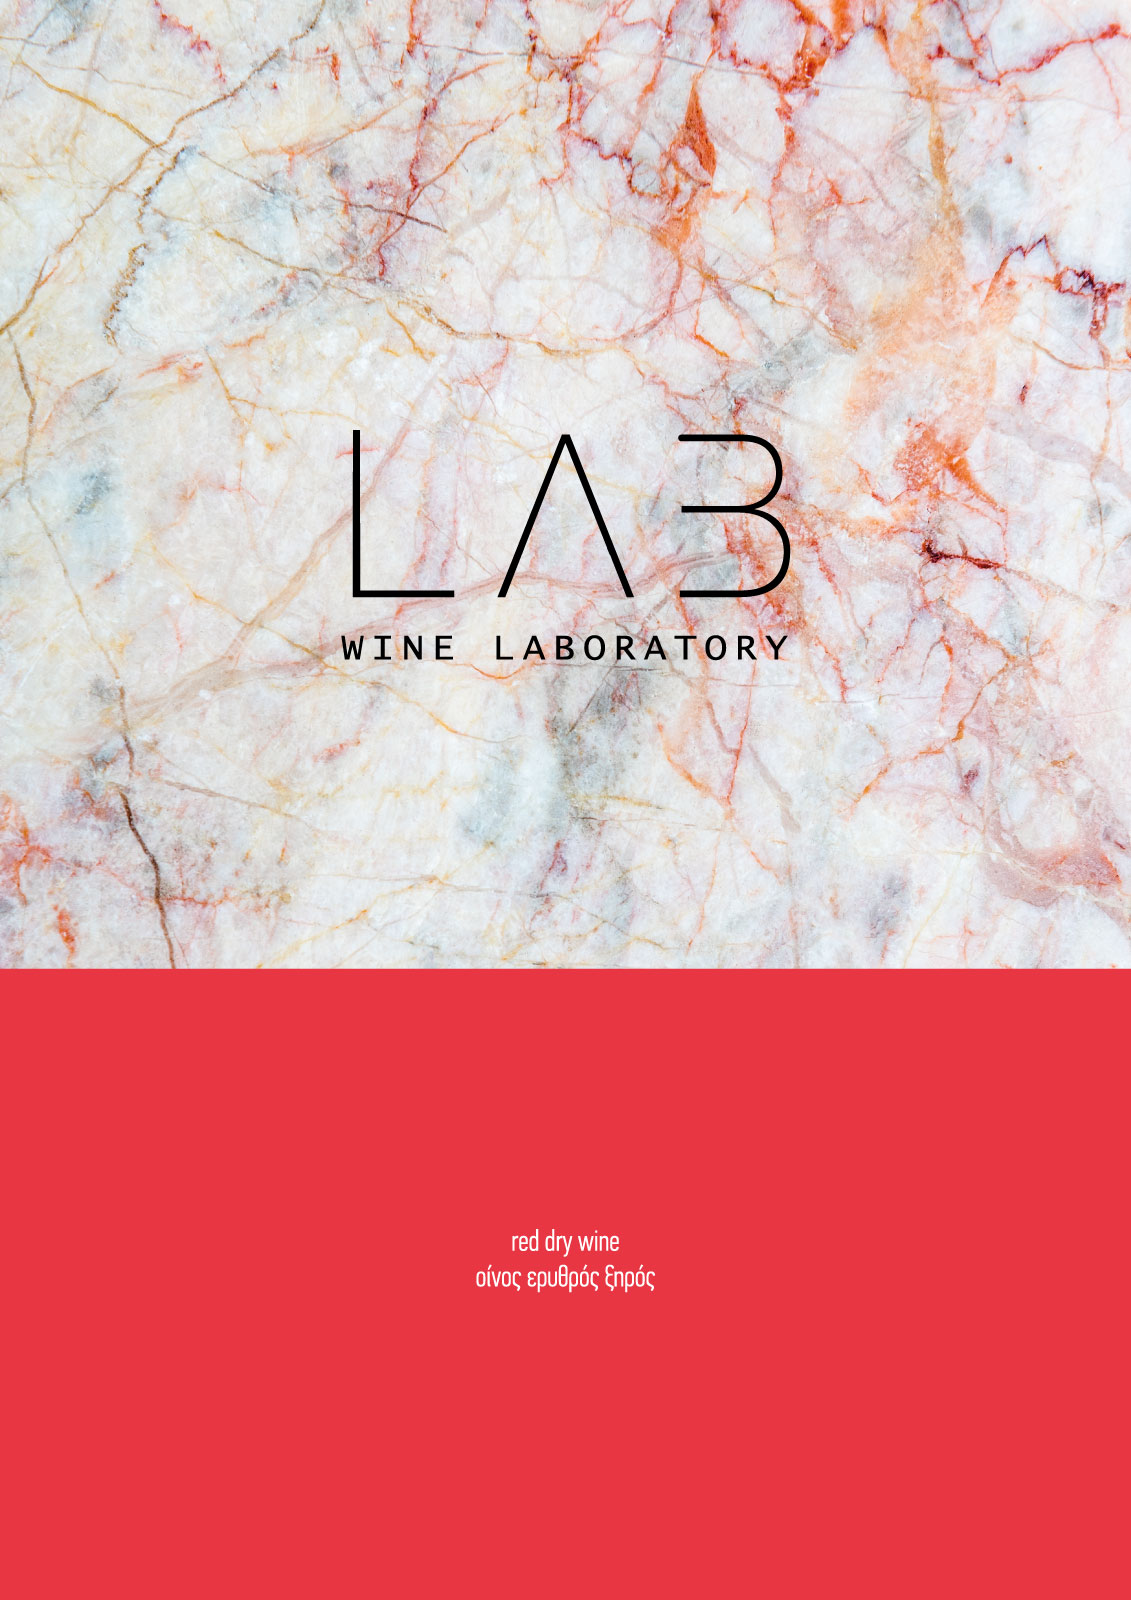 LAB wine laboratory